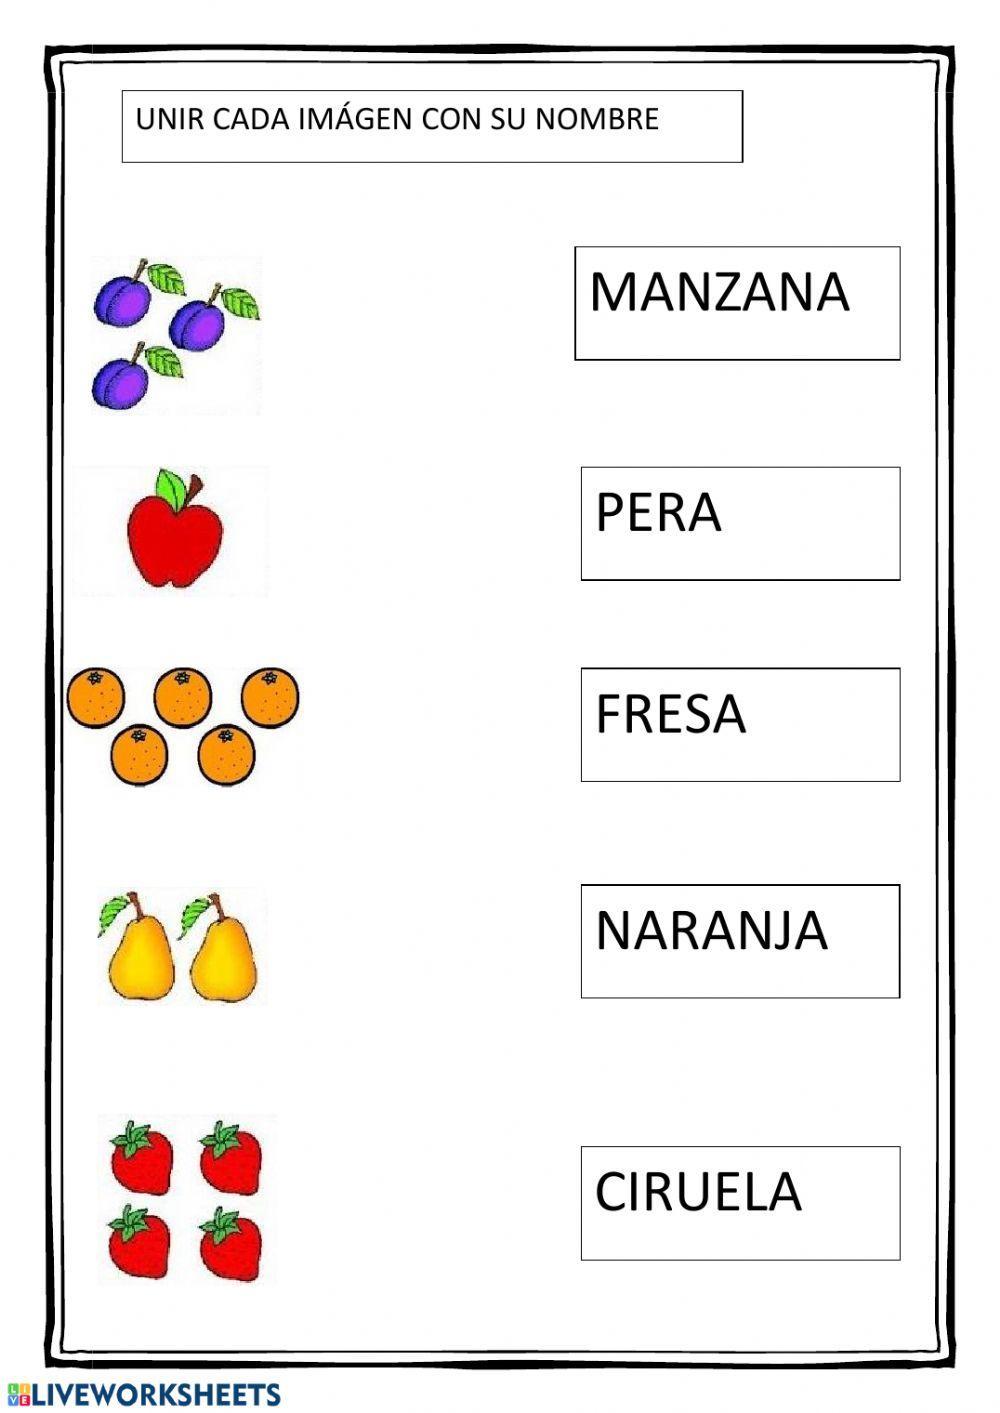 Unir cada fruta con su nombre.